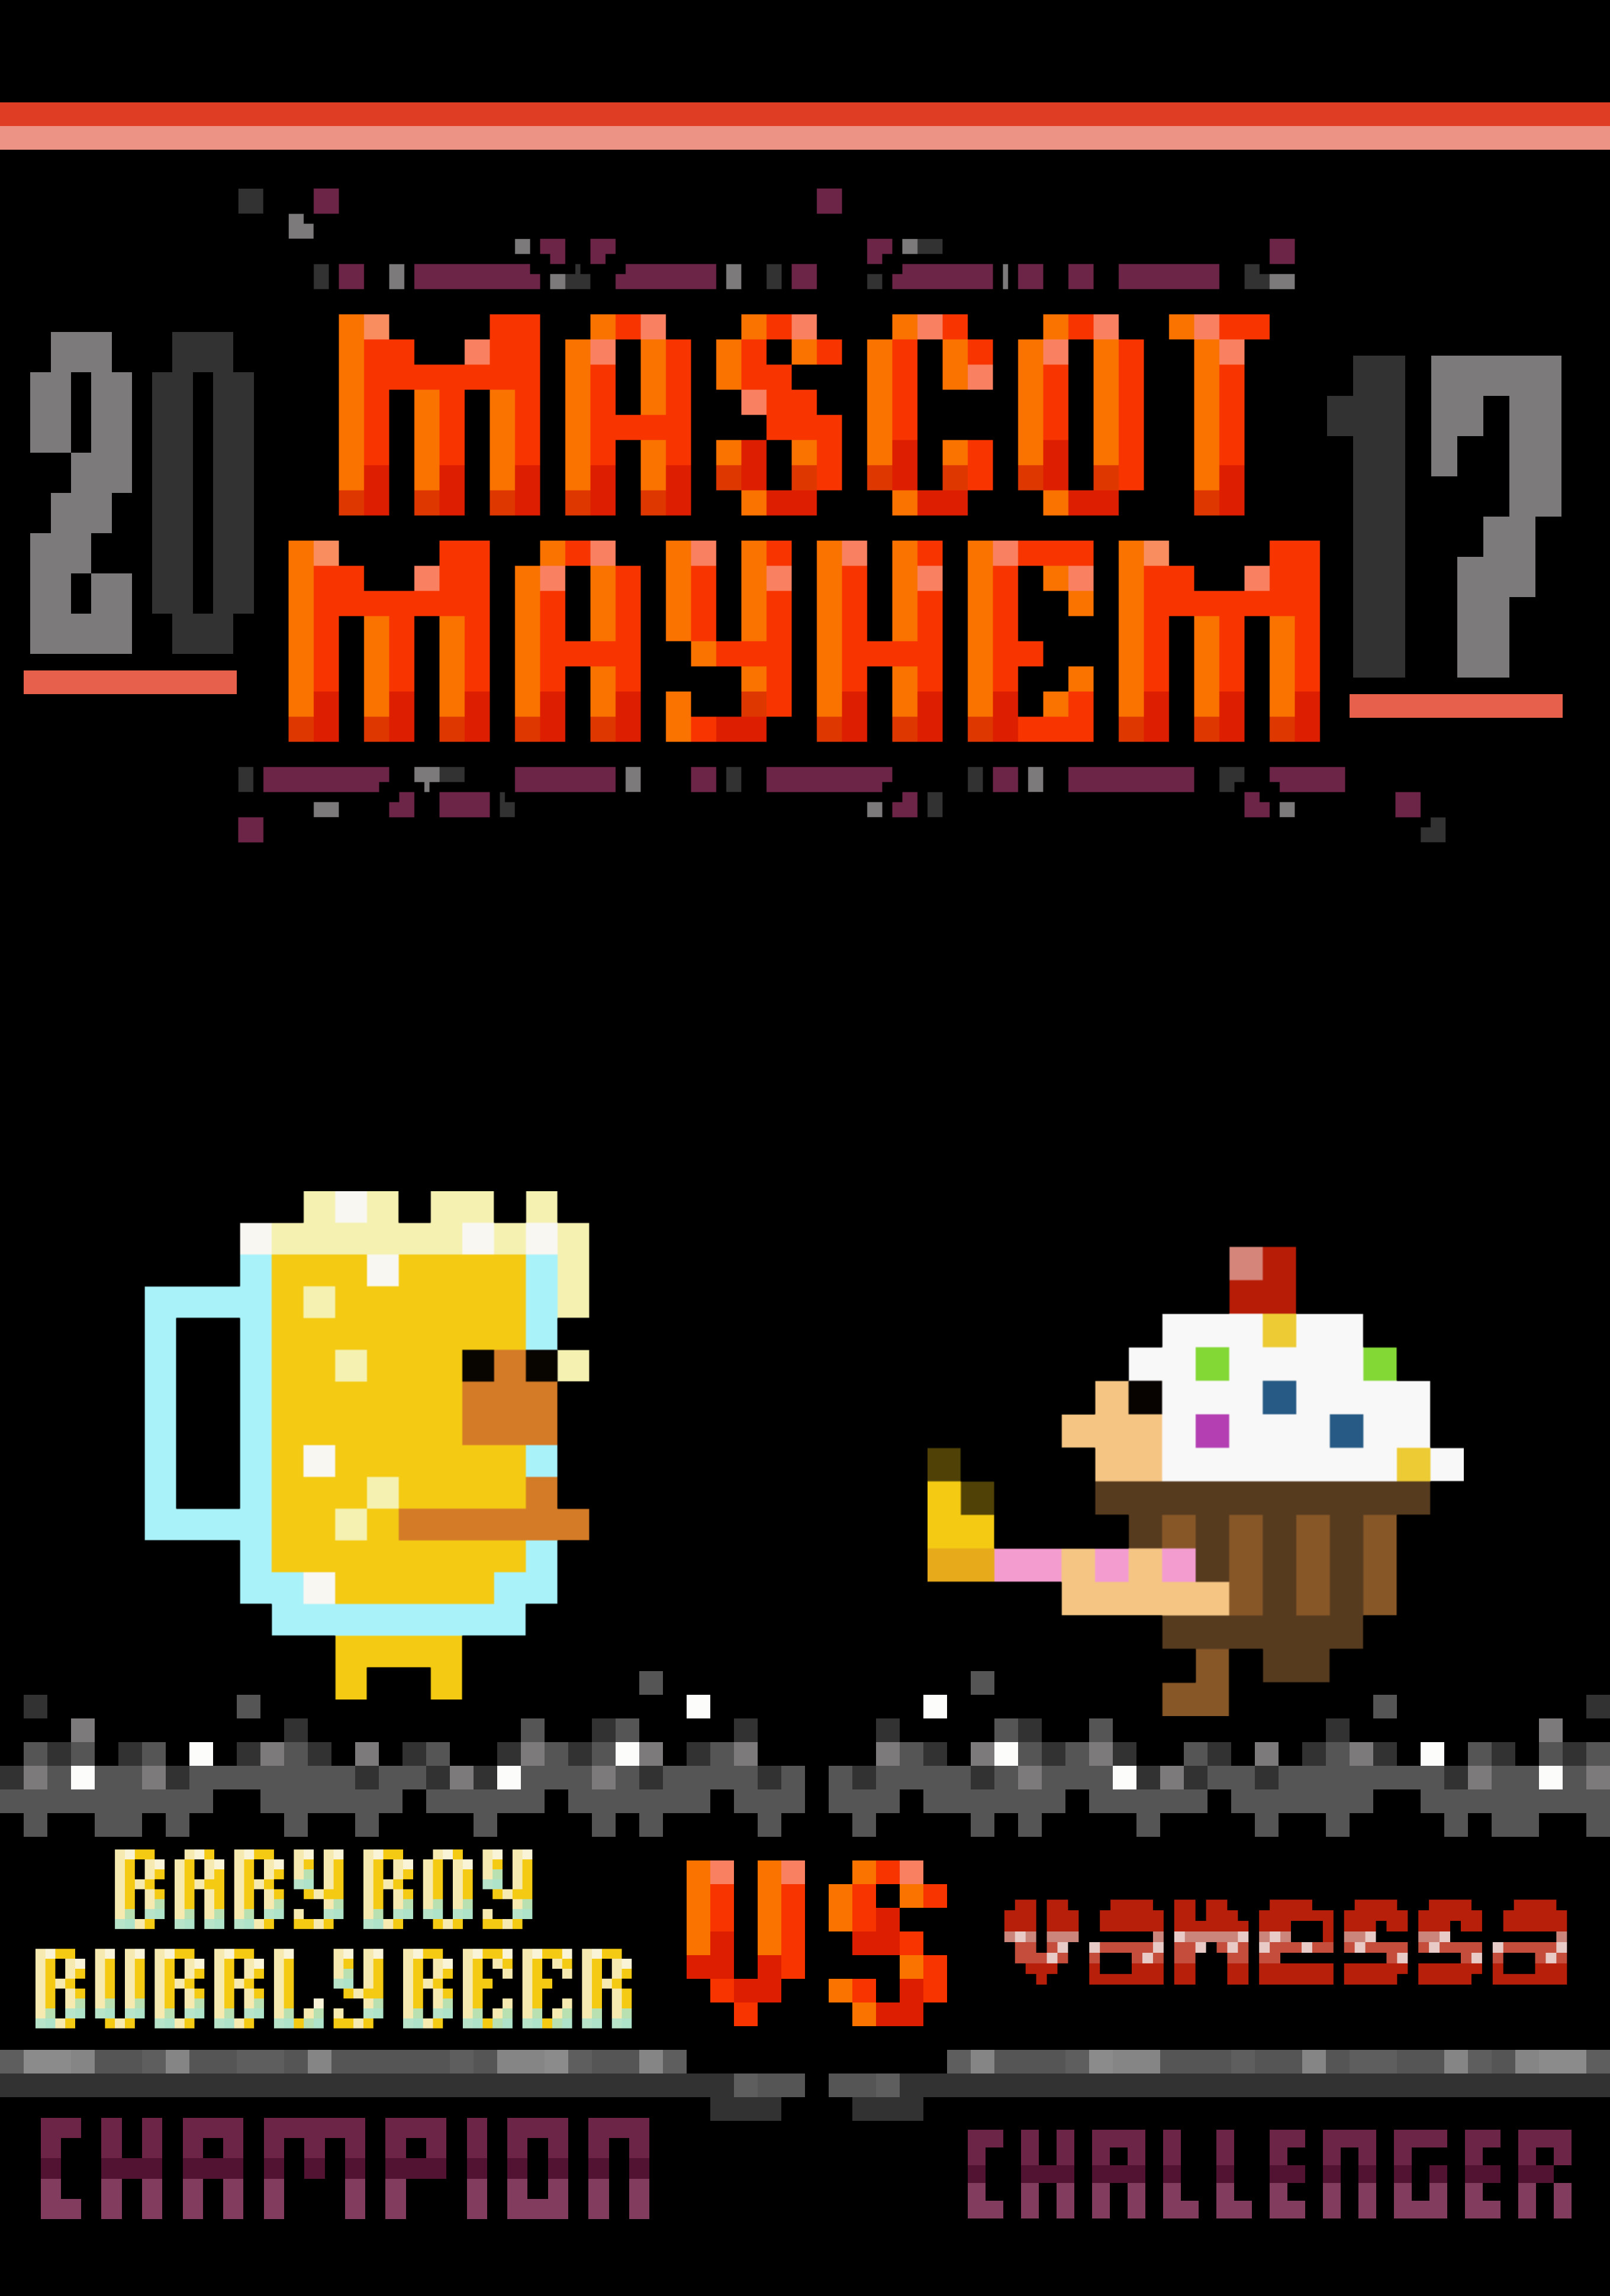 Teaser Poster for Mascot Mayhem